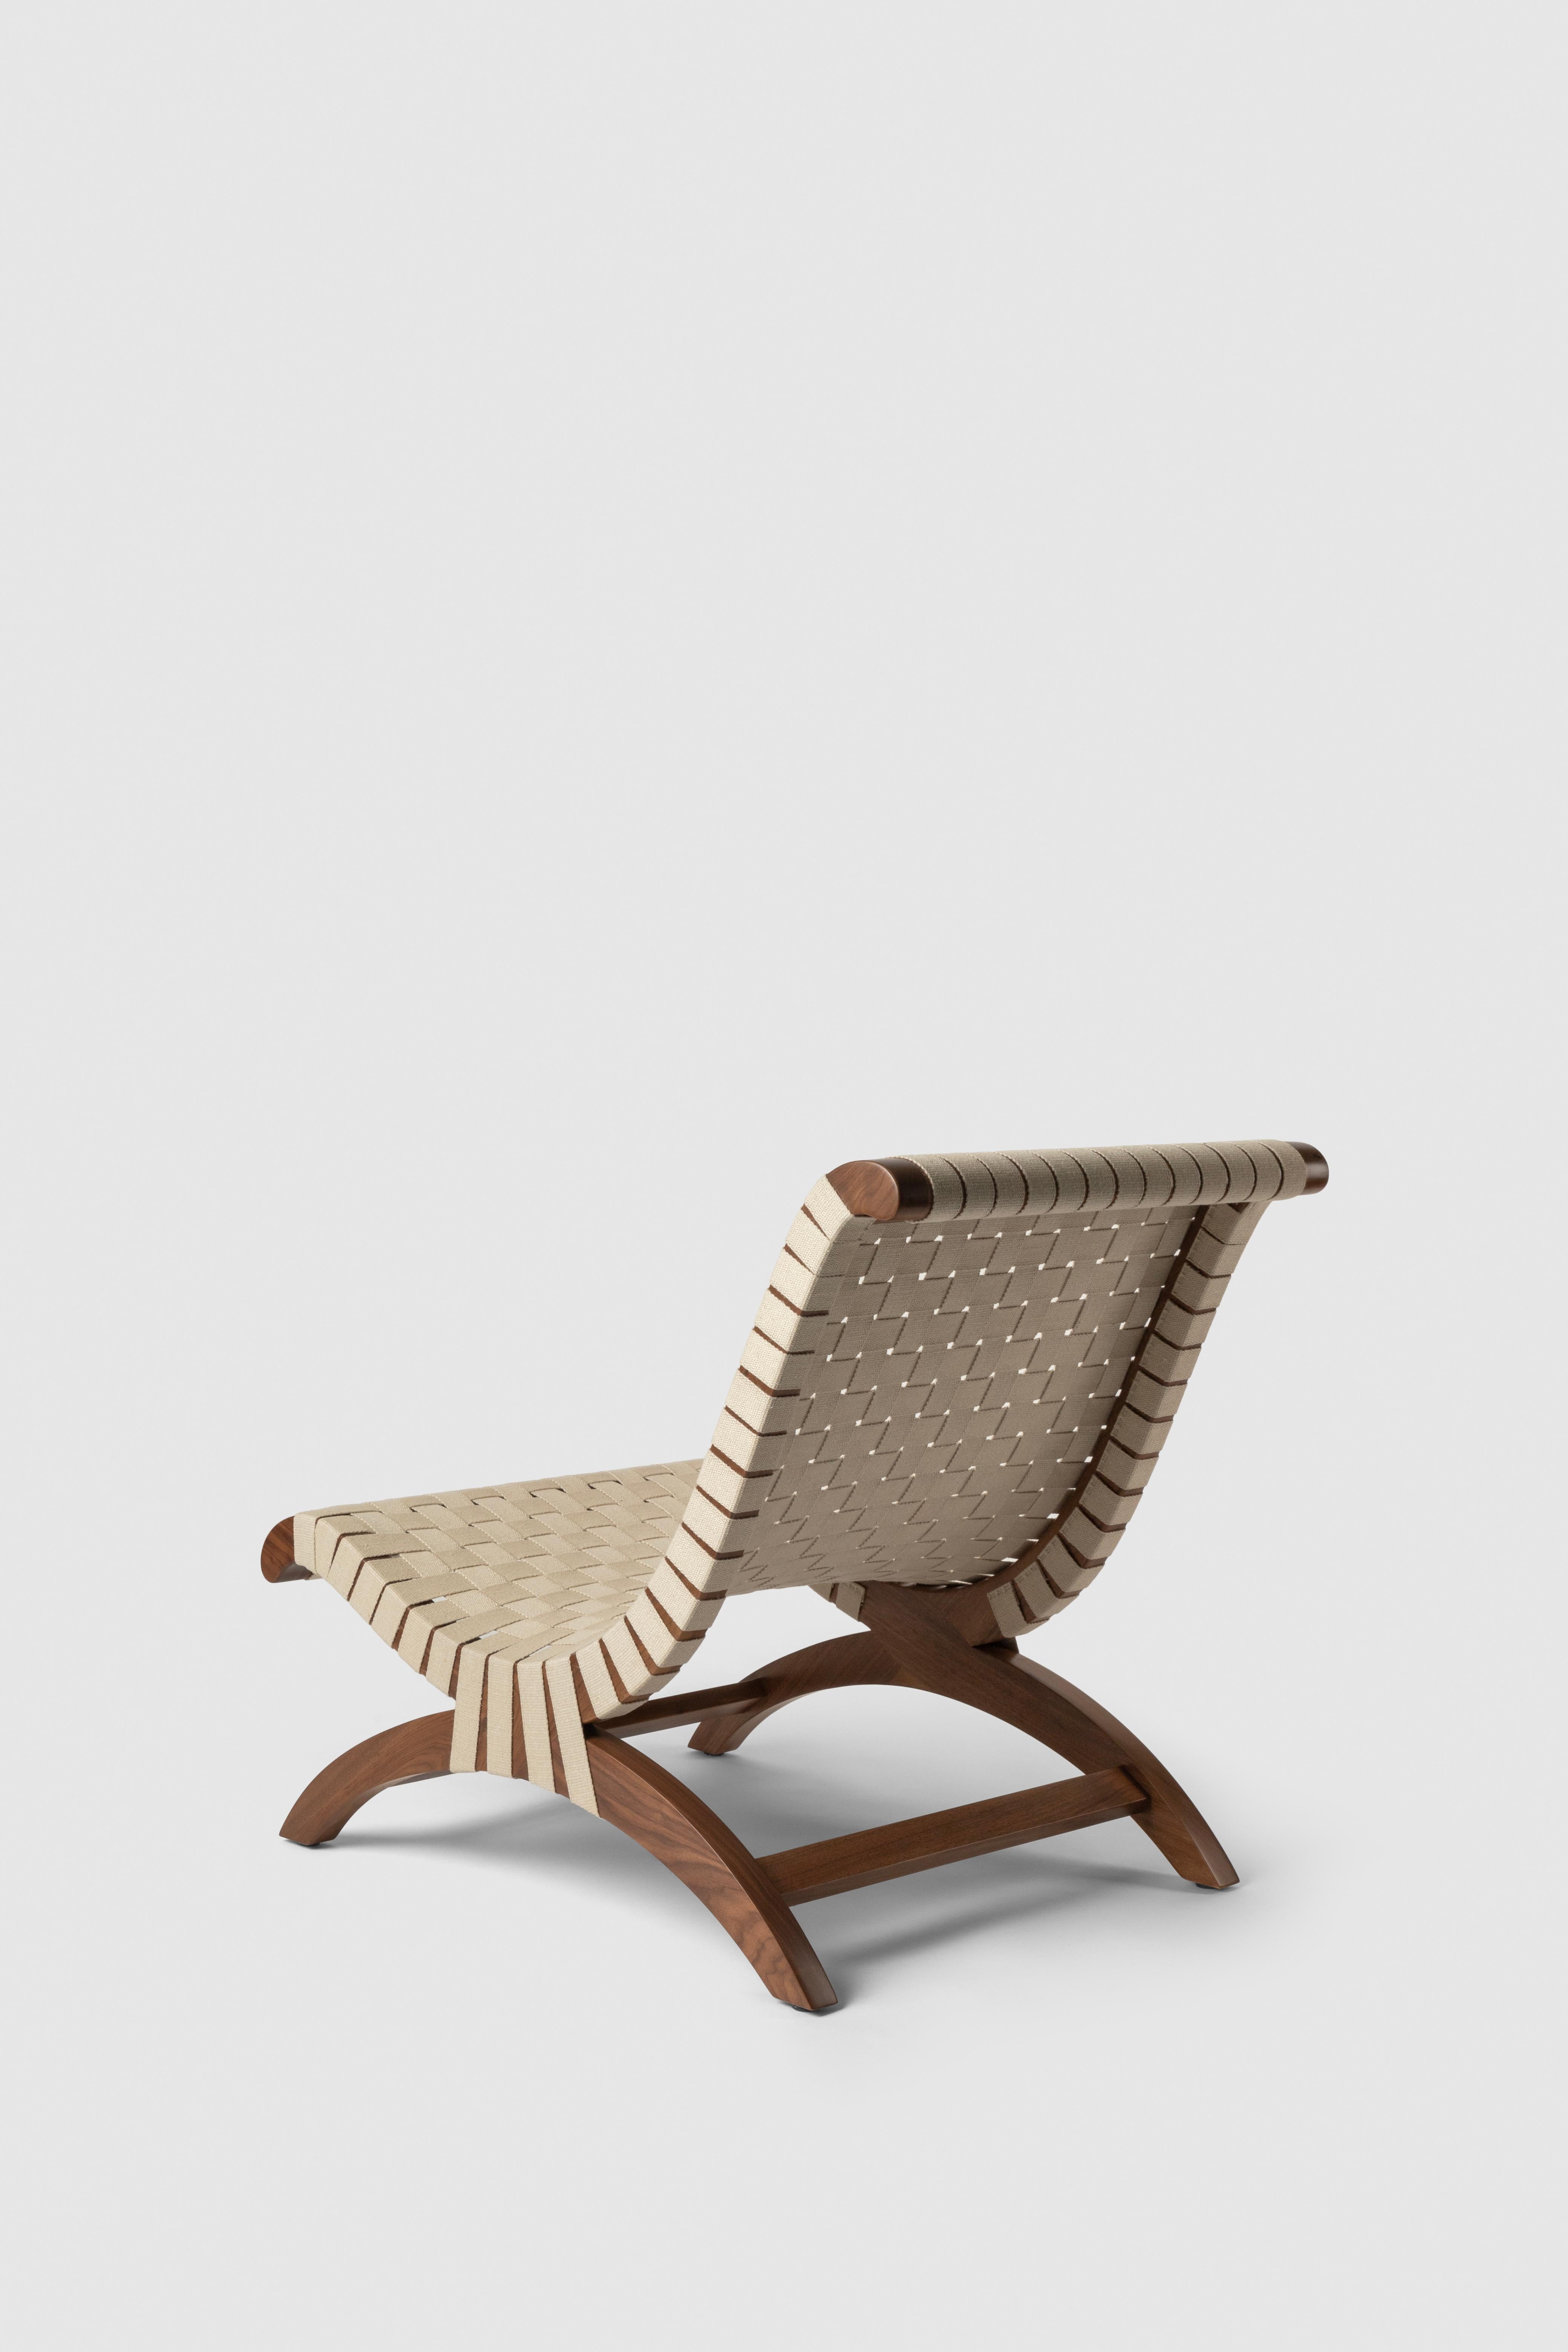 Clara Porset's Mexican Walnut & Hemp Butaque Chair, lizenzierte Neuauflage von Luteca (Handgefertigt) im Angebot